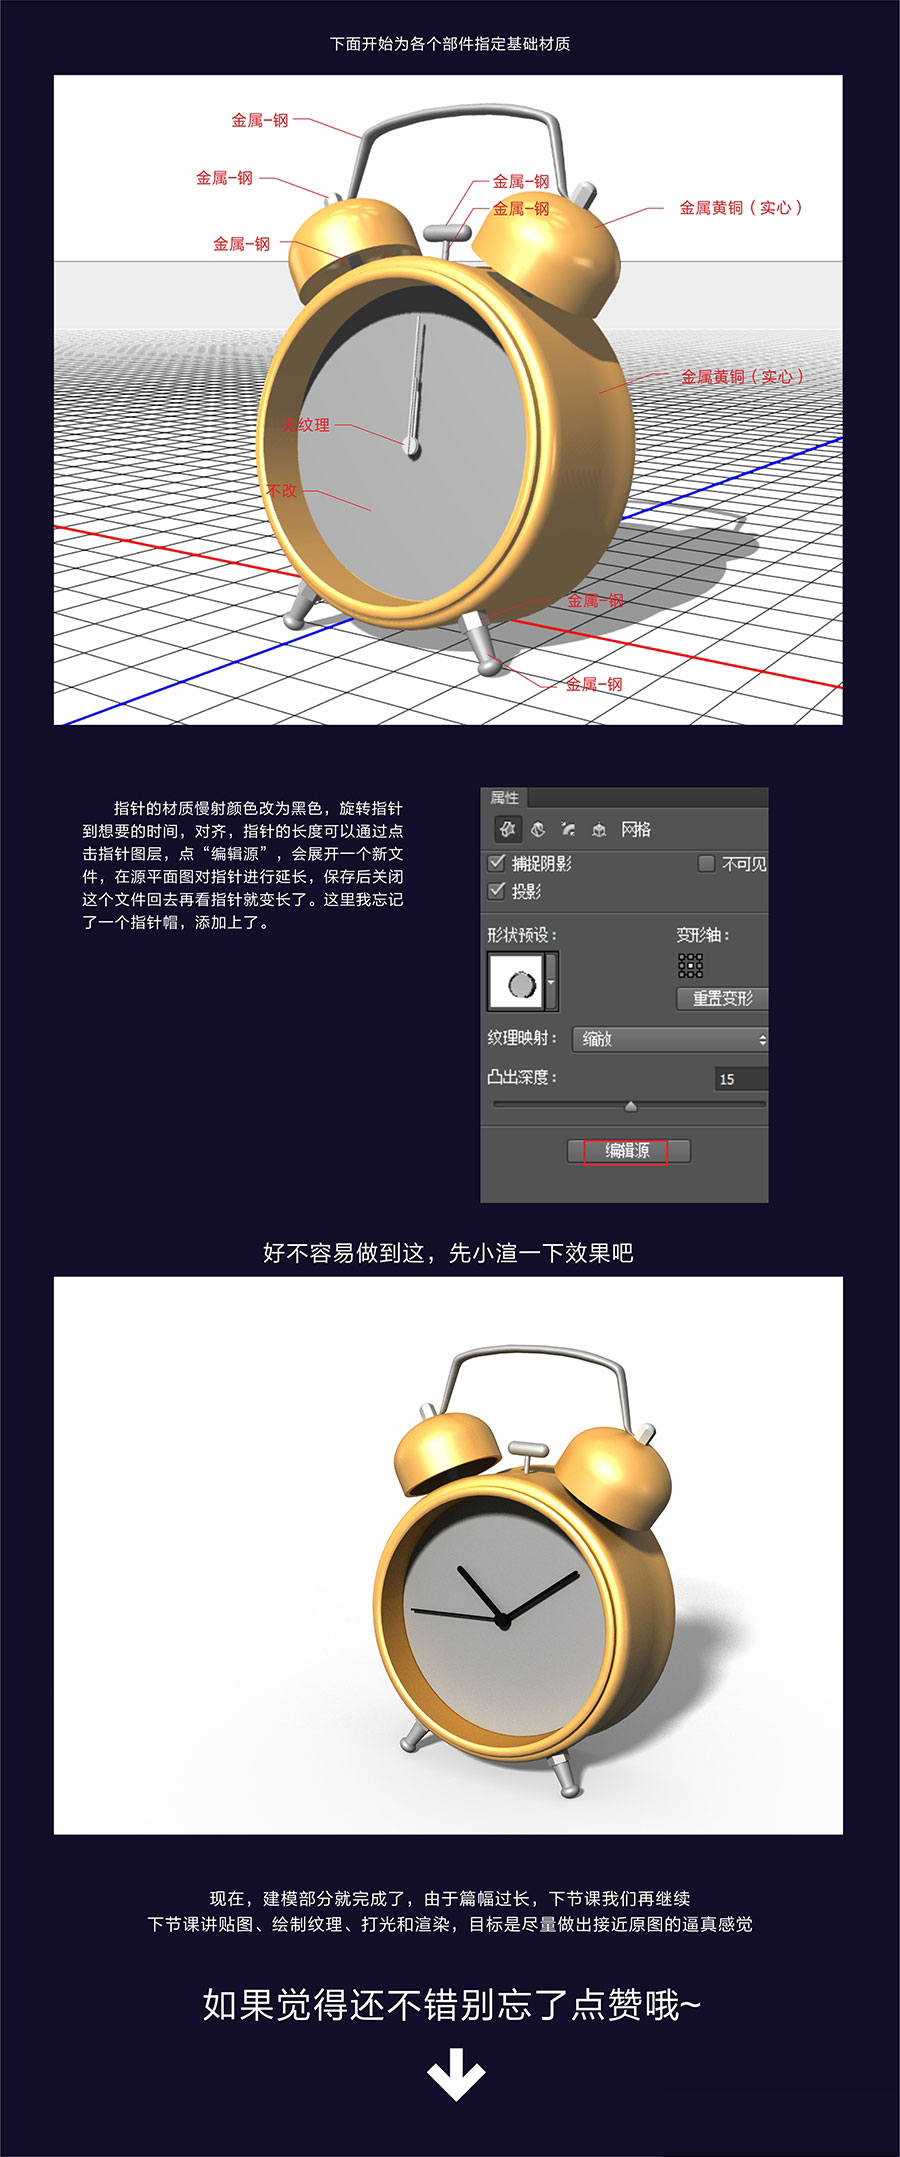 实例教程：PhotoShop CC 3D新功能介绍第二期